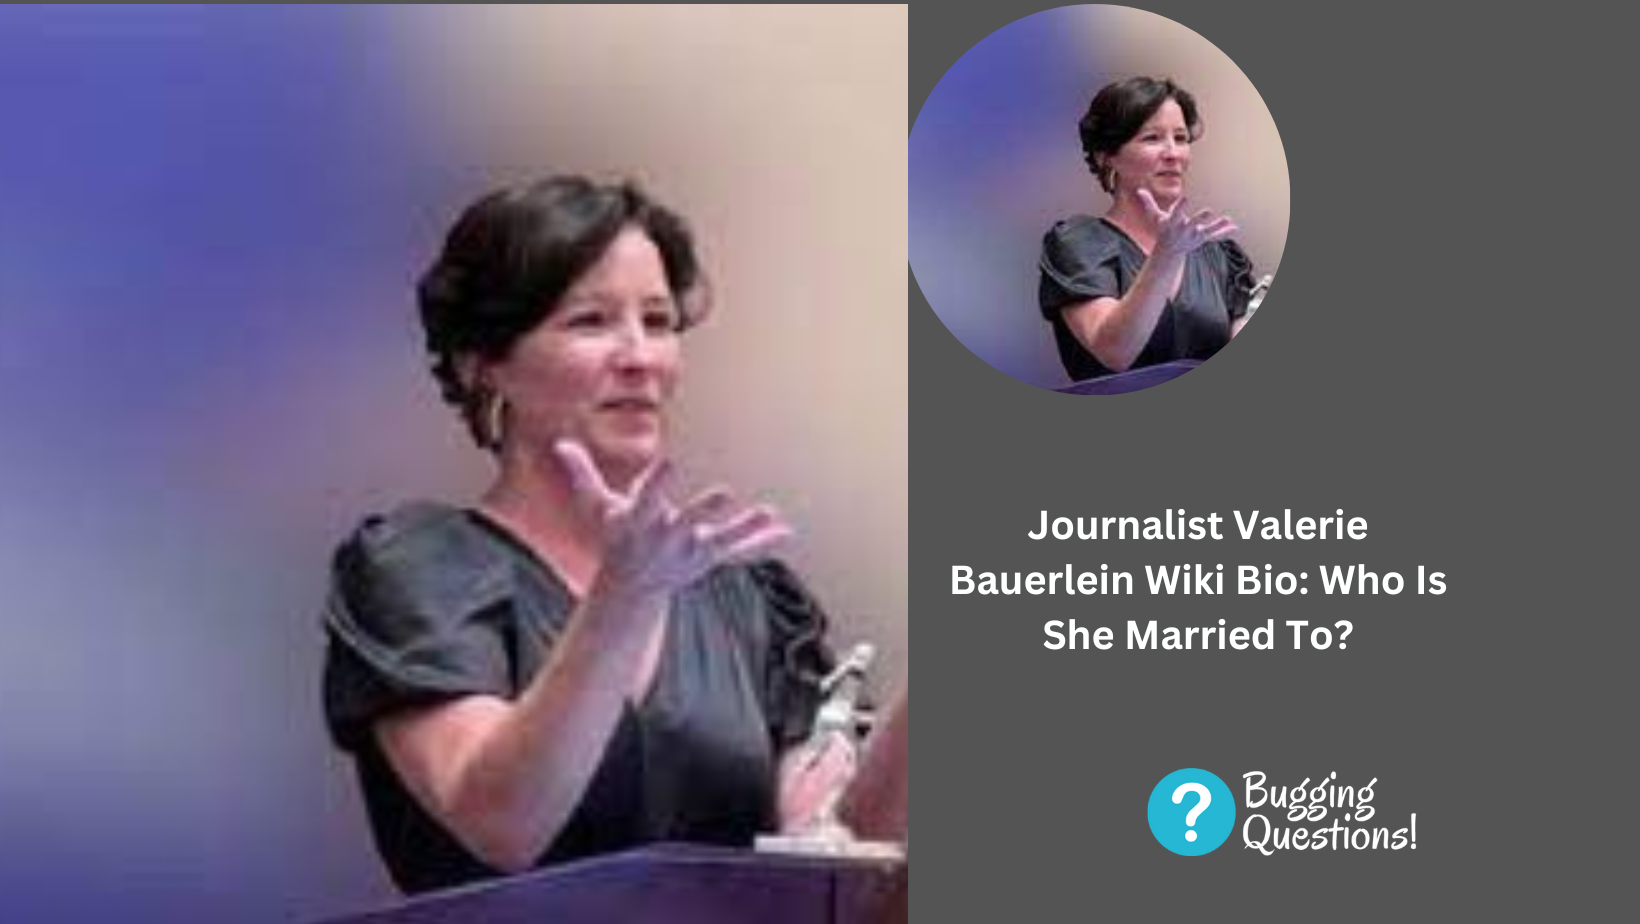 Journalist Valerie Bauerlein Wiki Bio: Who Is She Married To?